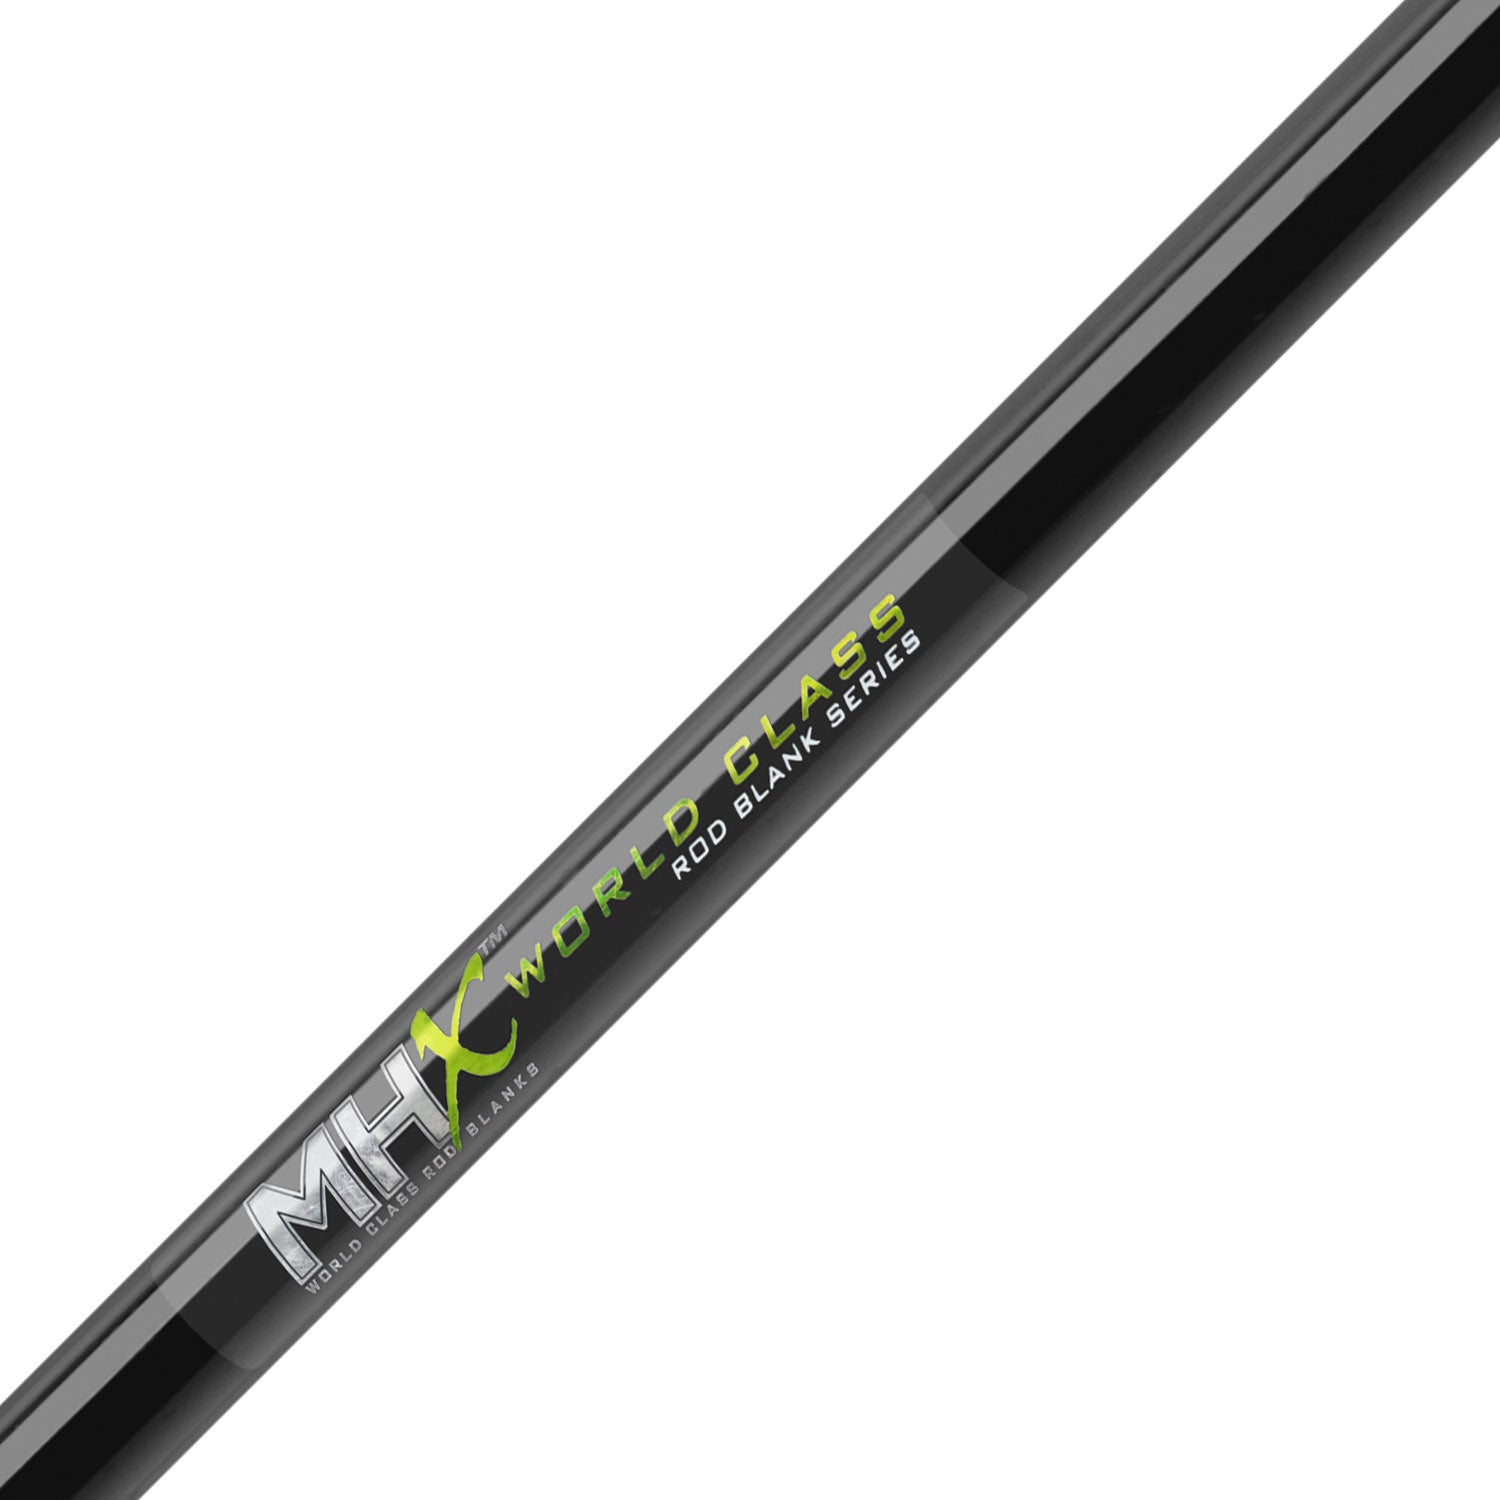 MHX 9'0" Med-Light Surf Rod Blank - SU1085F-MHX